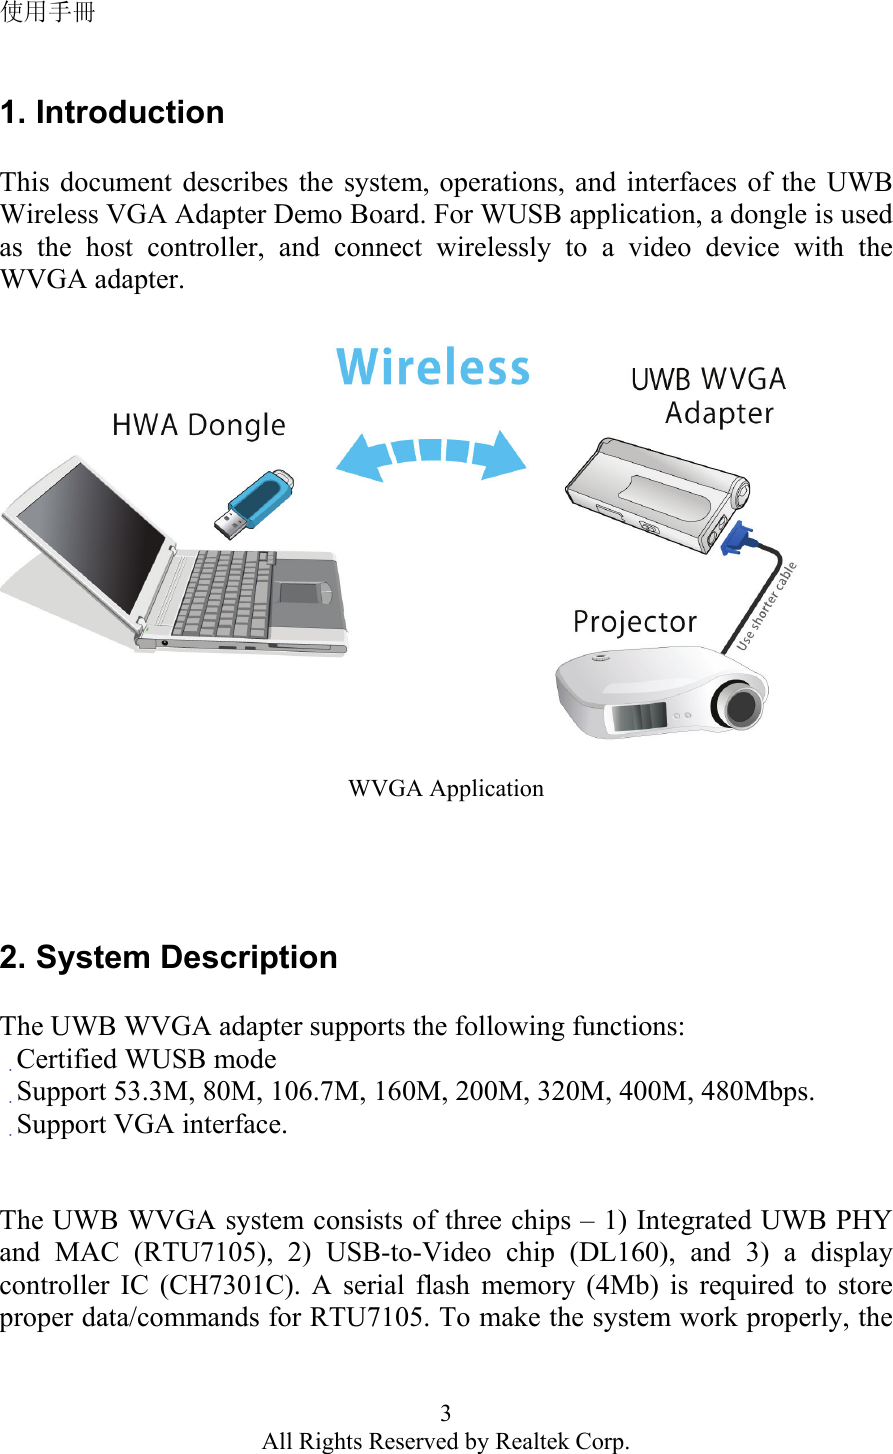 使用手冊 3 All Rights Reserved by Realtek Corp. 1. Introduction  This document describes the system, operations, and interfaces of the UWB Wireless VGA Adapter Demo Board. For WUSB application, a dongle is used as the host controller, and connect wirelessly to a video device with the WVGA adapter.    WVGA Application     2. System Description  The UWB WVGA adapter supports the following functions: 　Certified WUSB mode 　Support 53.3M, 80M, 106.7M, 160M, 200M, 320M, 400M, 480Mbps. 　Support VGA interface.   The UWB WVGA system consists of three chips – 1) Integrated UWB PHY and MAC (RTU7105), 2) USB-to-Video chip (DL160), and 3) a display controller IC (CH7301C). A serial flash memory (4Mb) is required to store proper data/commands for RTU7105. To make the system work properly, the 